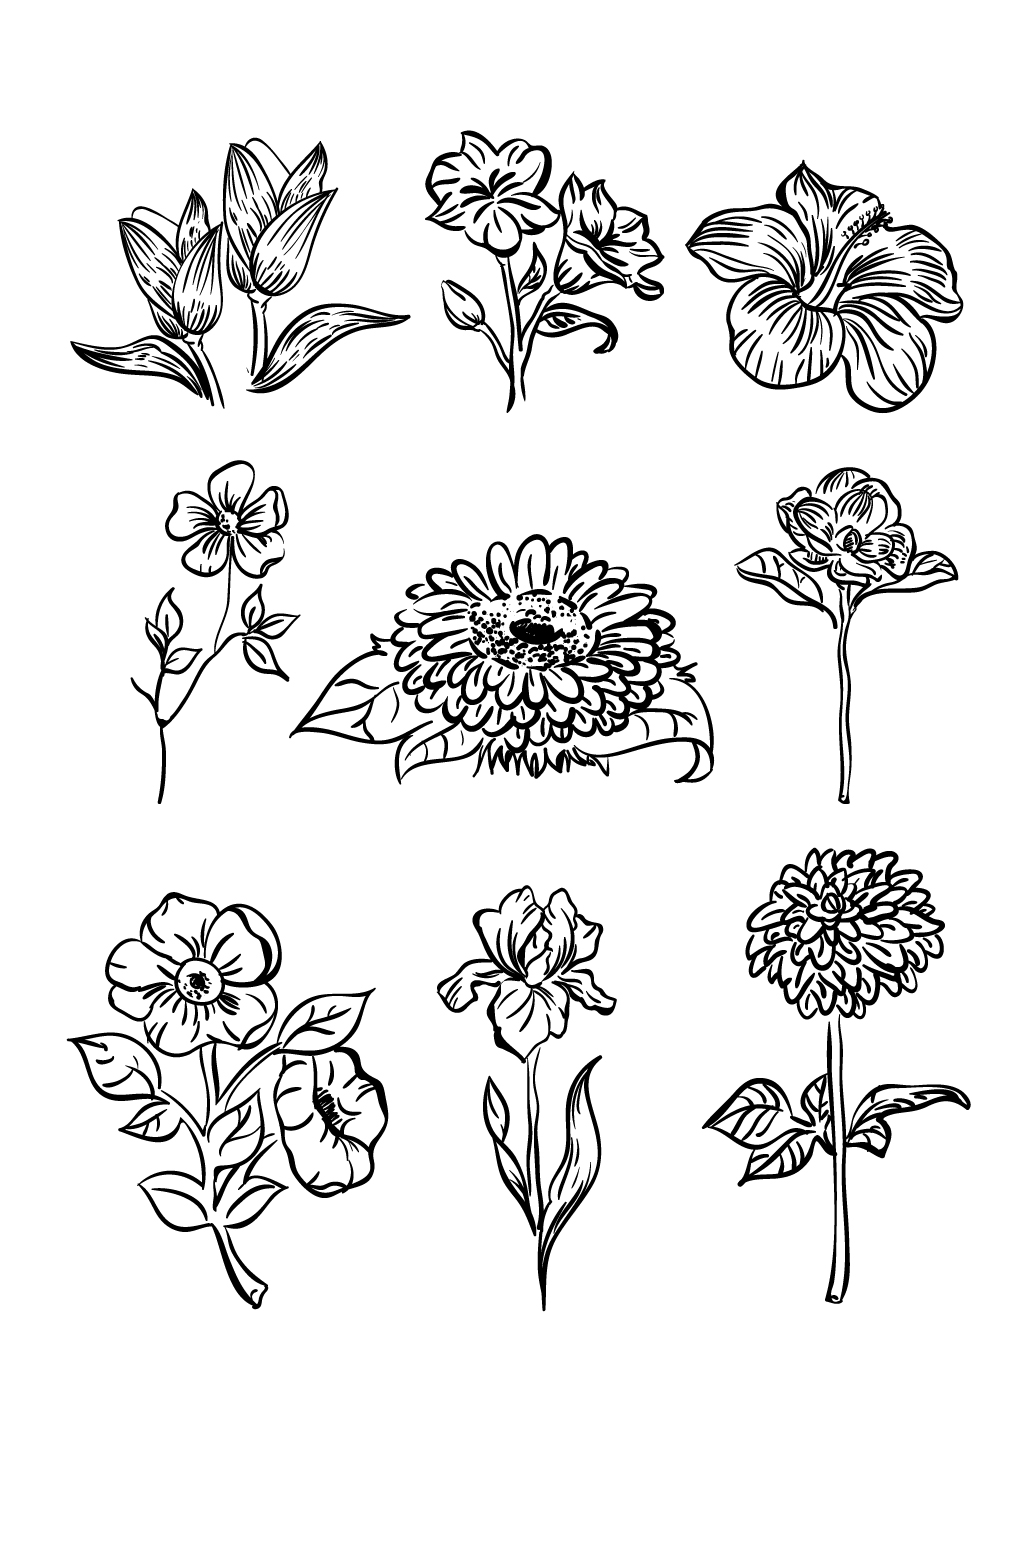 众图网独家提供线条简约花卉手绘素材免费下载,本作品是由艺树设计